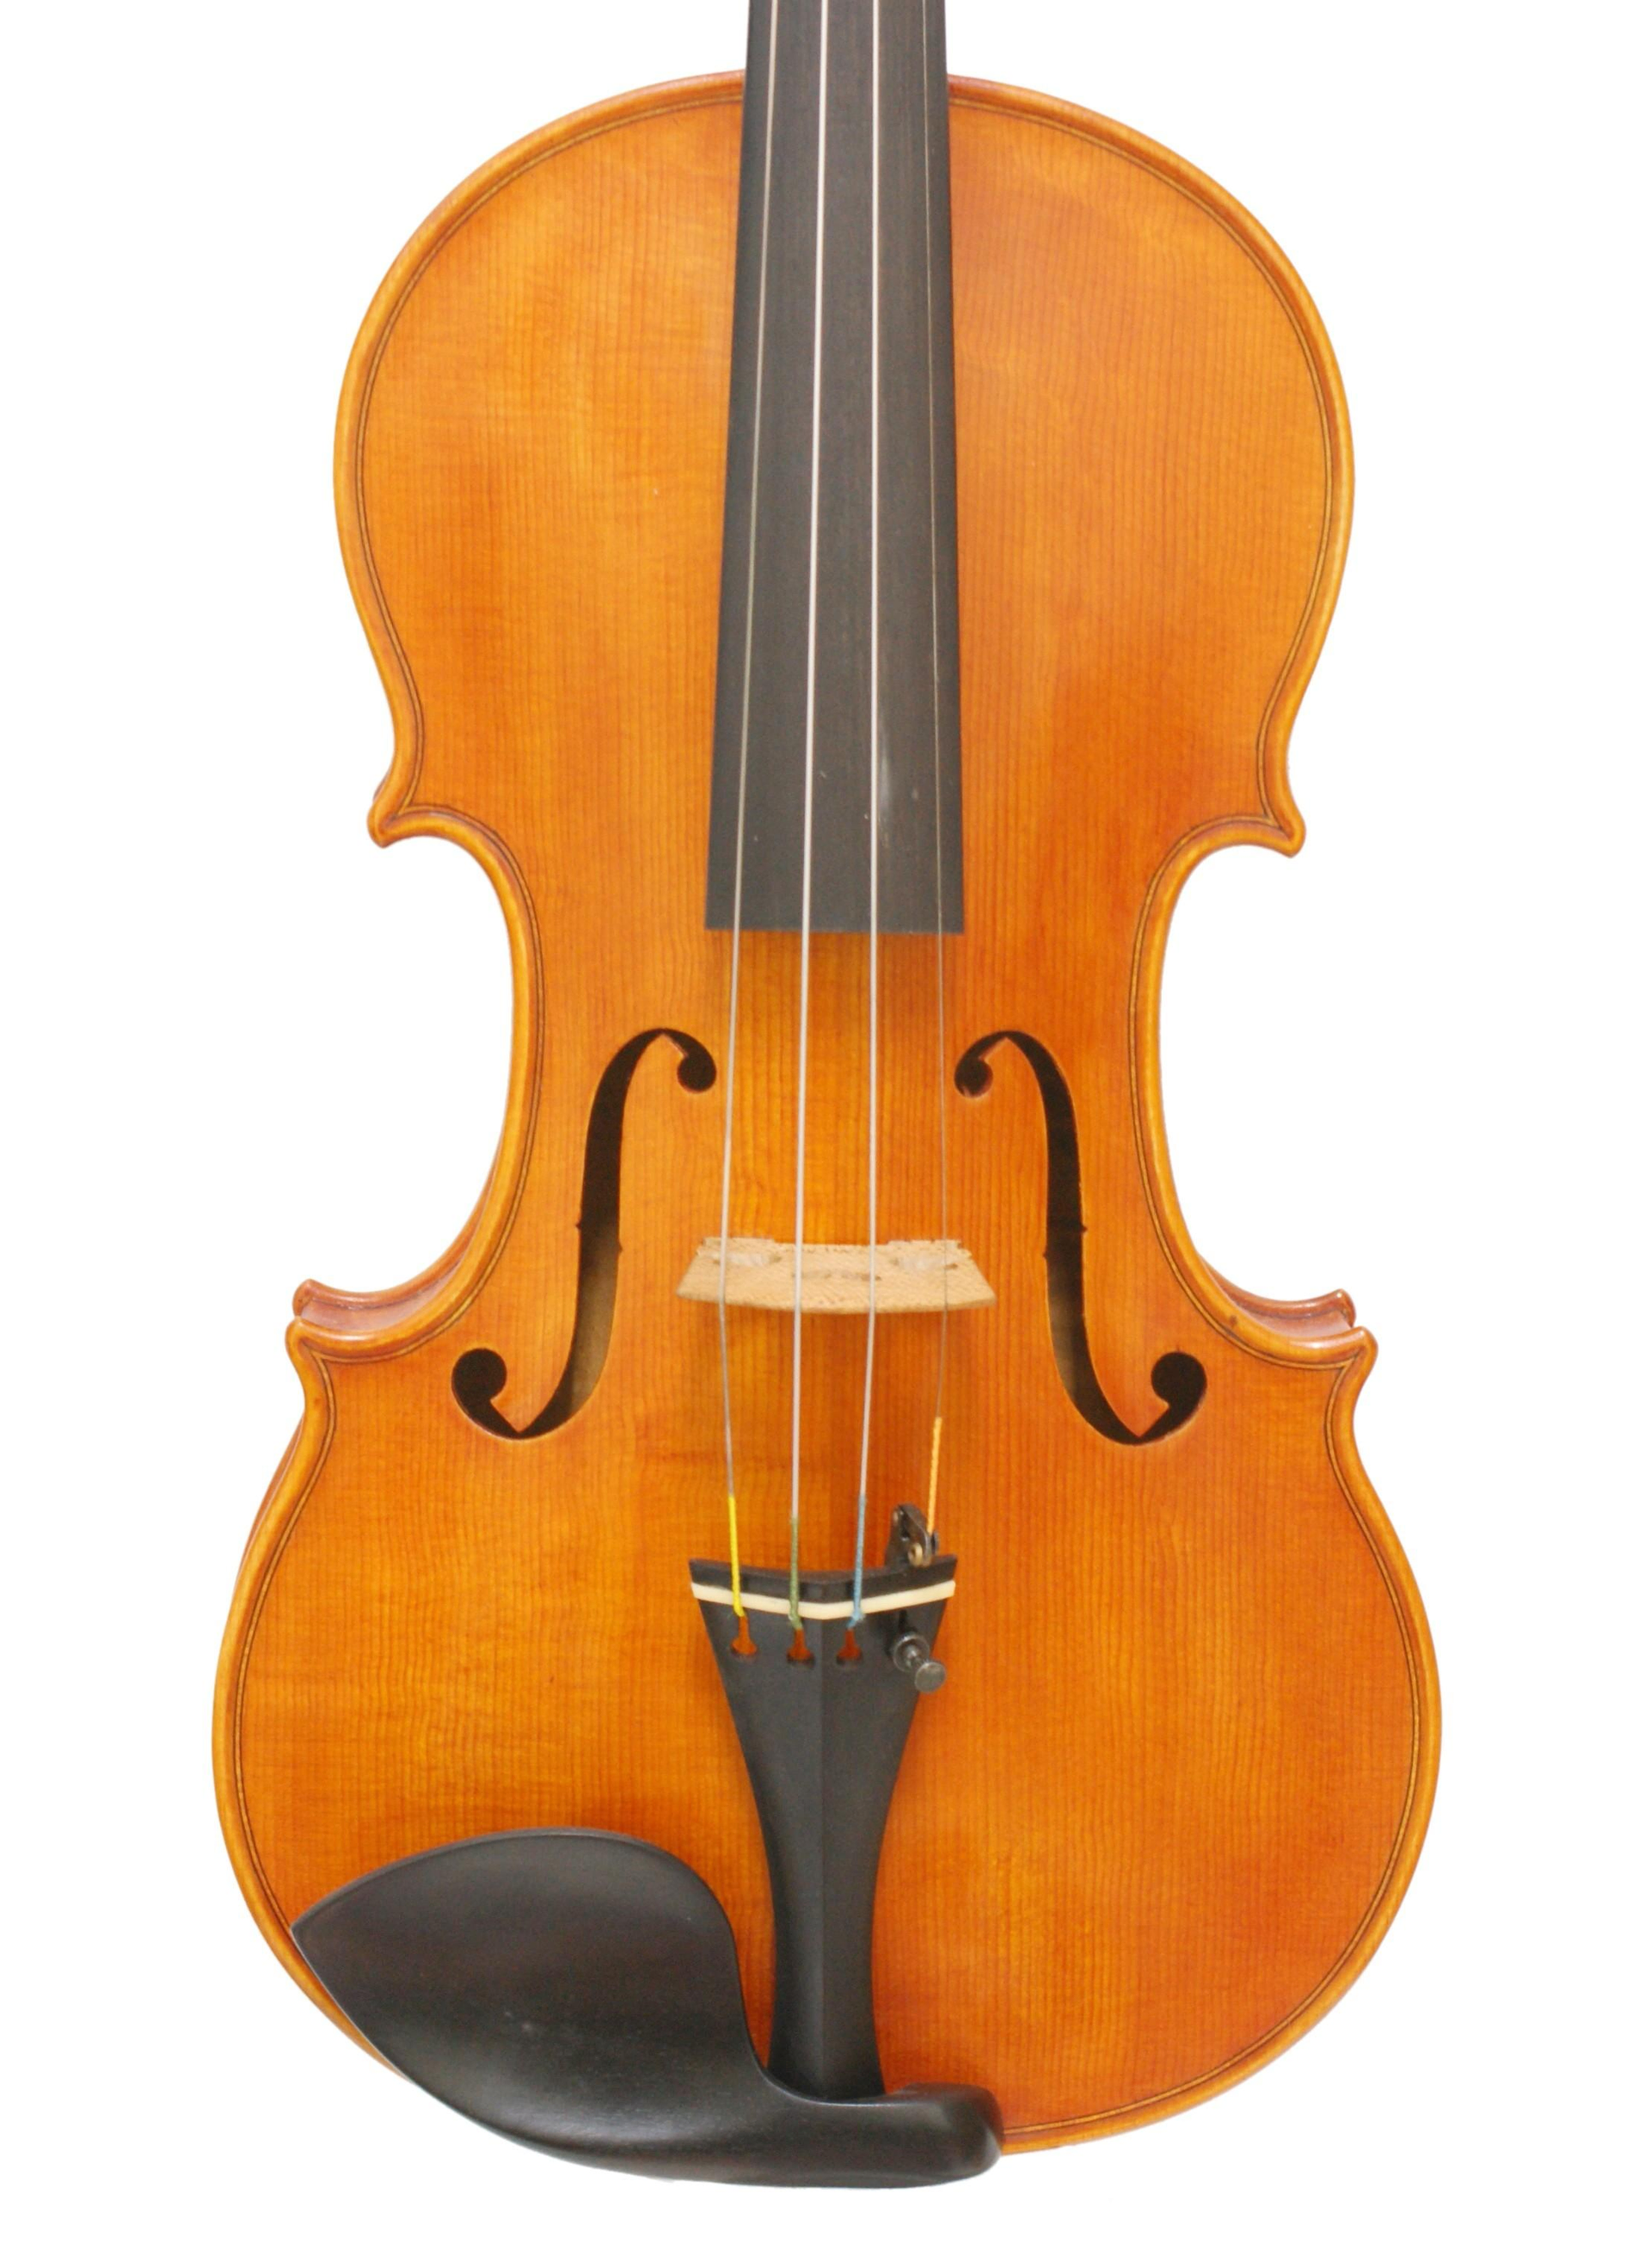 安默麗小提琴 replica,Antonio Stradivari 1704 violin[BETTS]